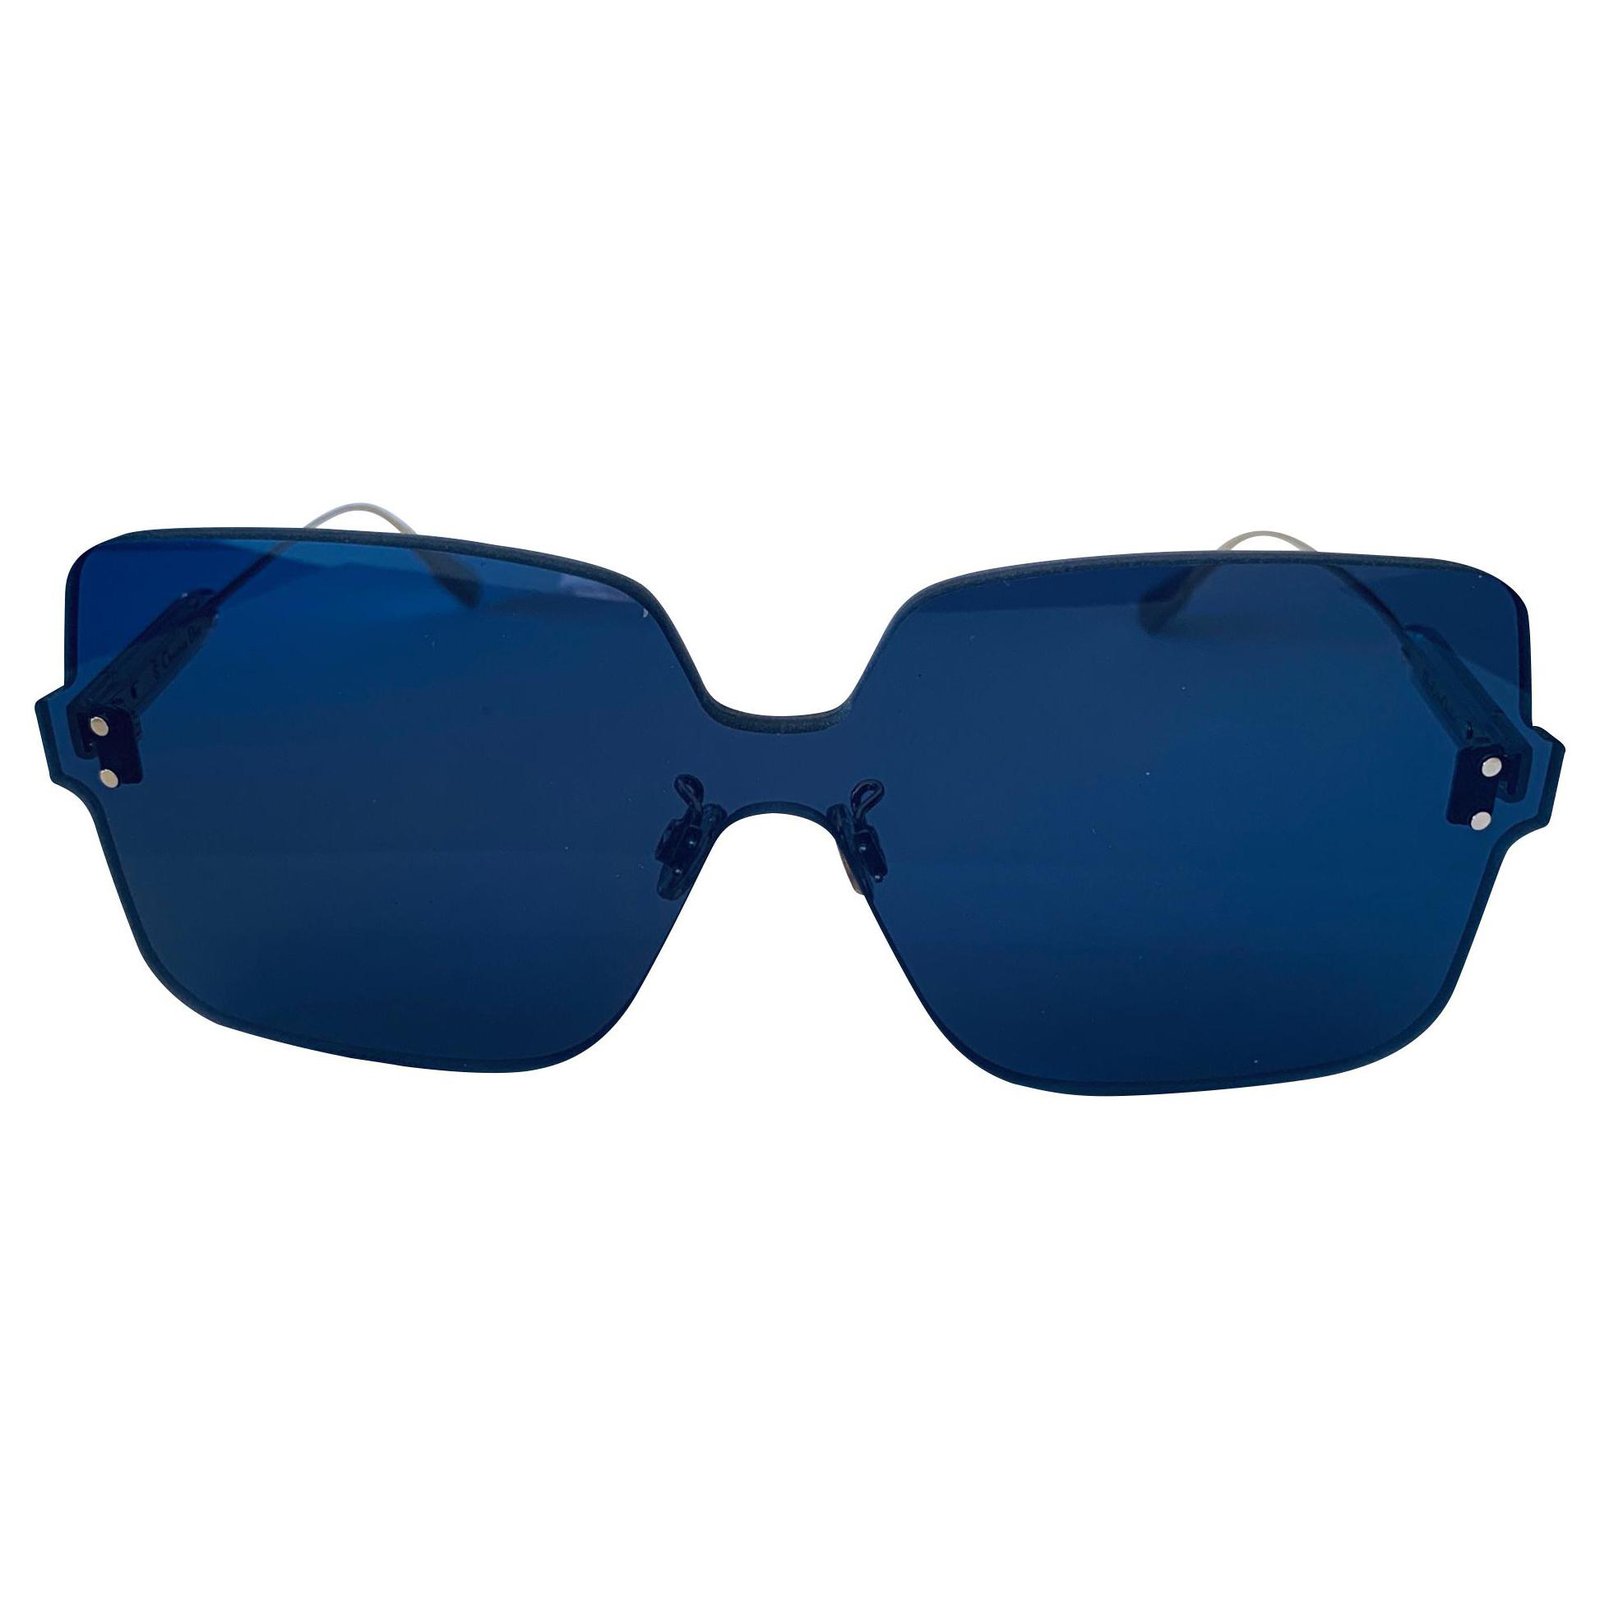 dior new sunglasses 2019